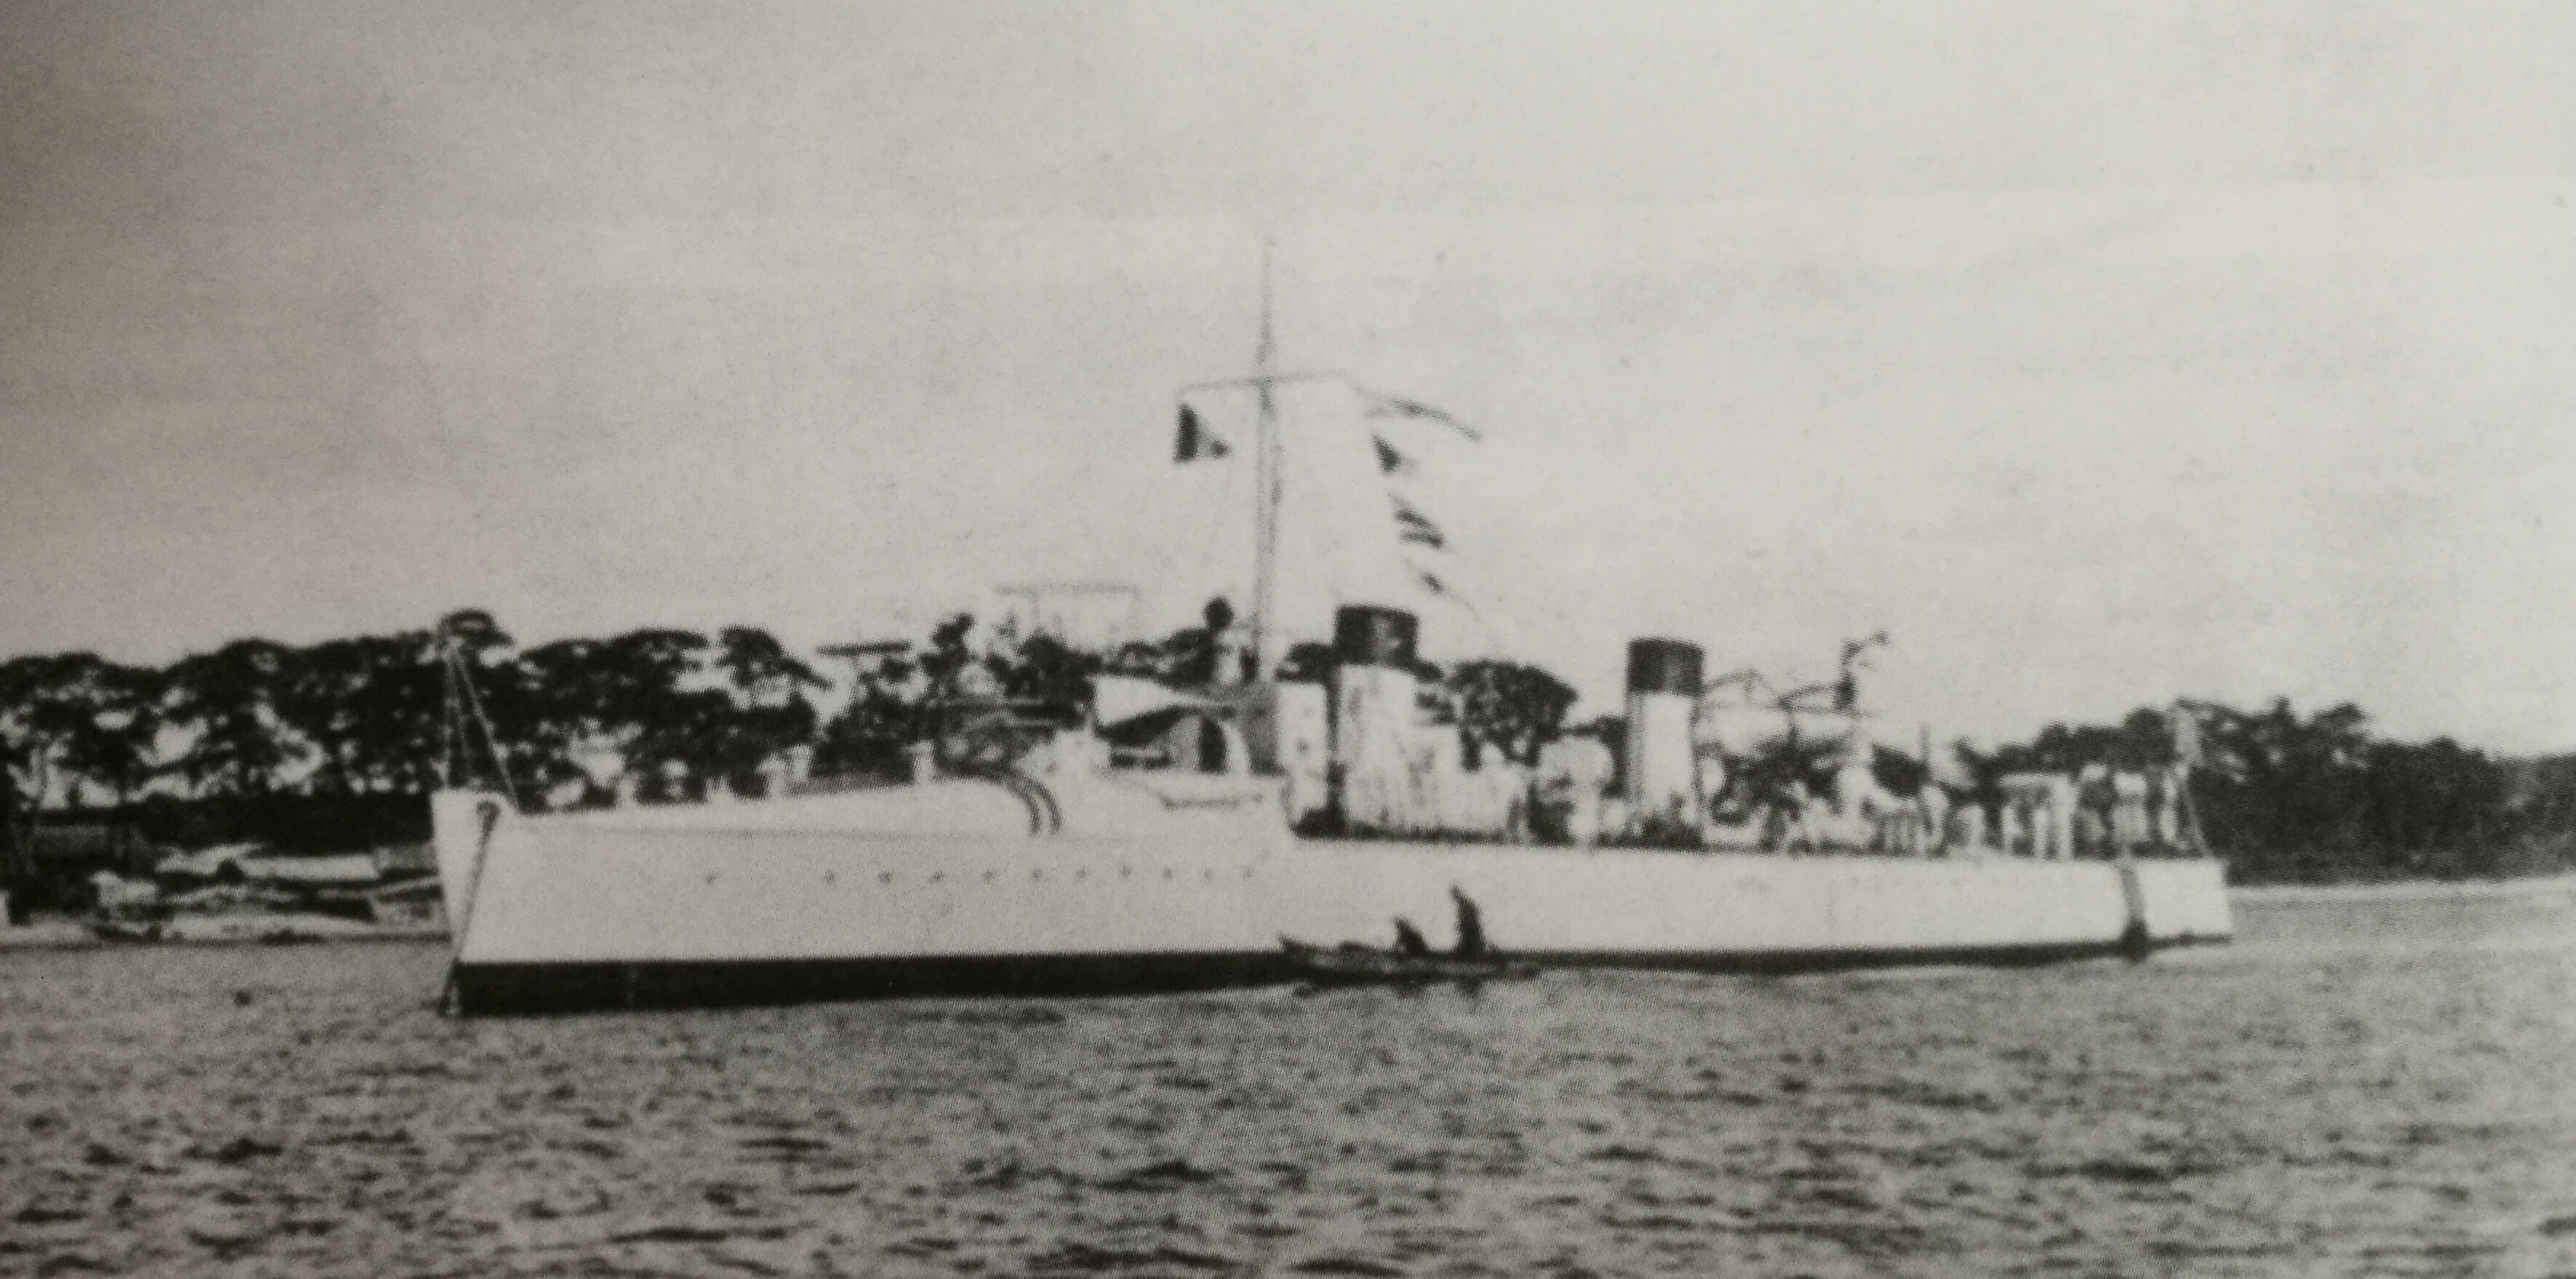 東雲號，東雲級驅逐艦首艦，該級為日本最早的驅逐艦